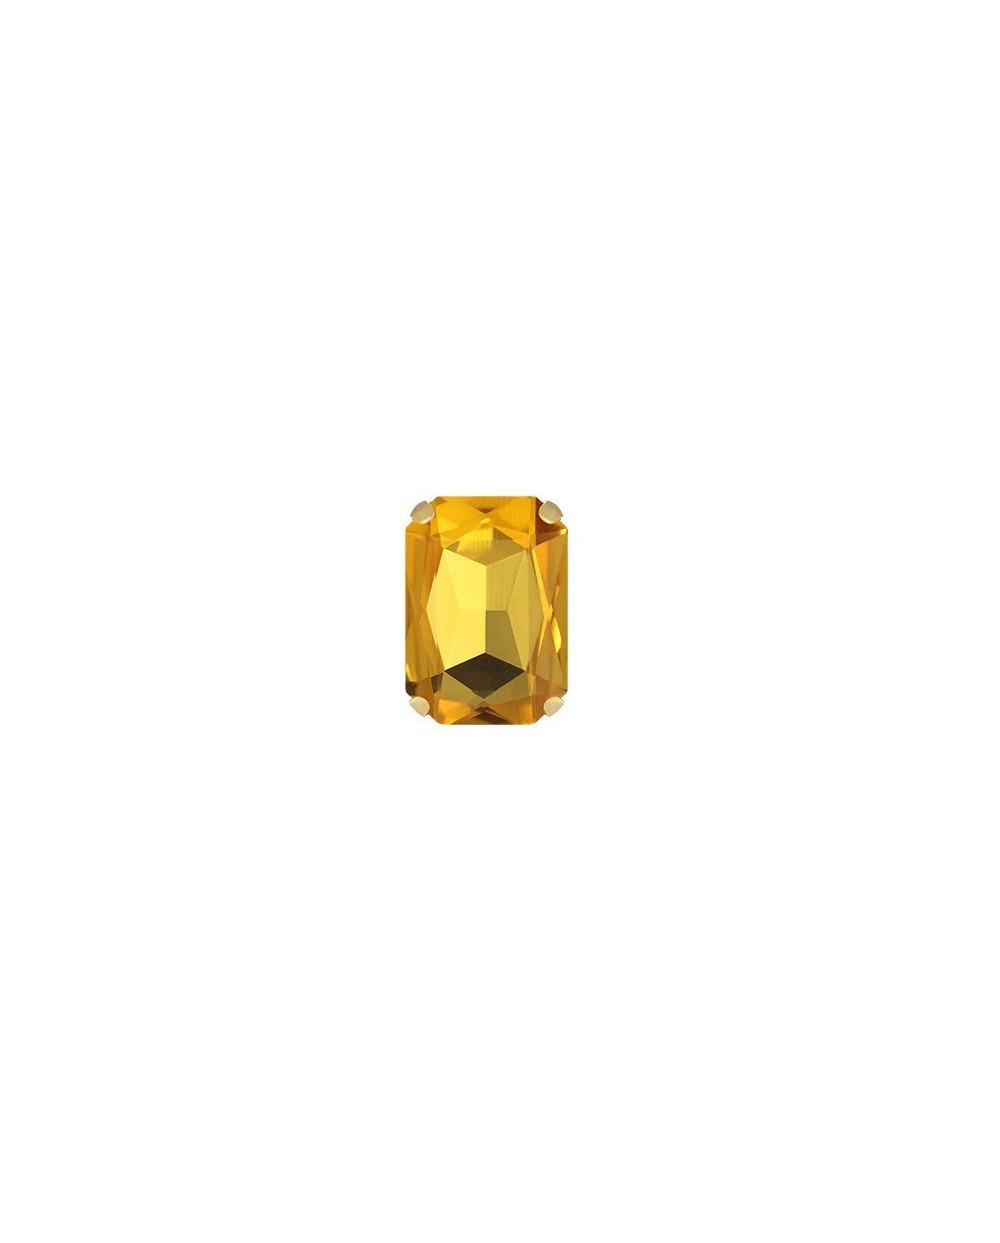 Stačiakampiai prisiuvami kristalai geltonos sp., 10x14mm, 1 vnt.